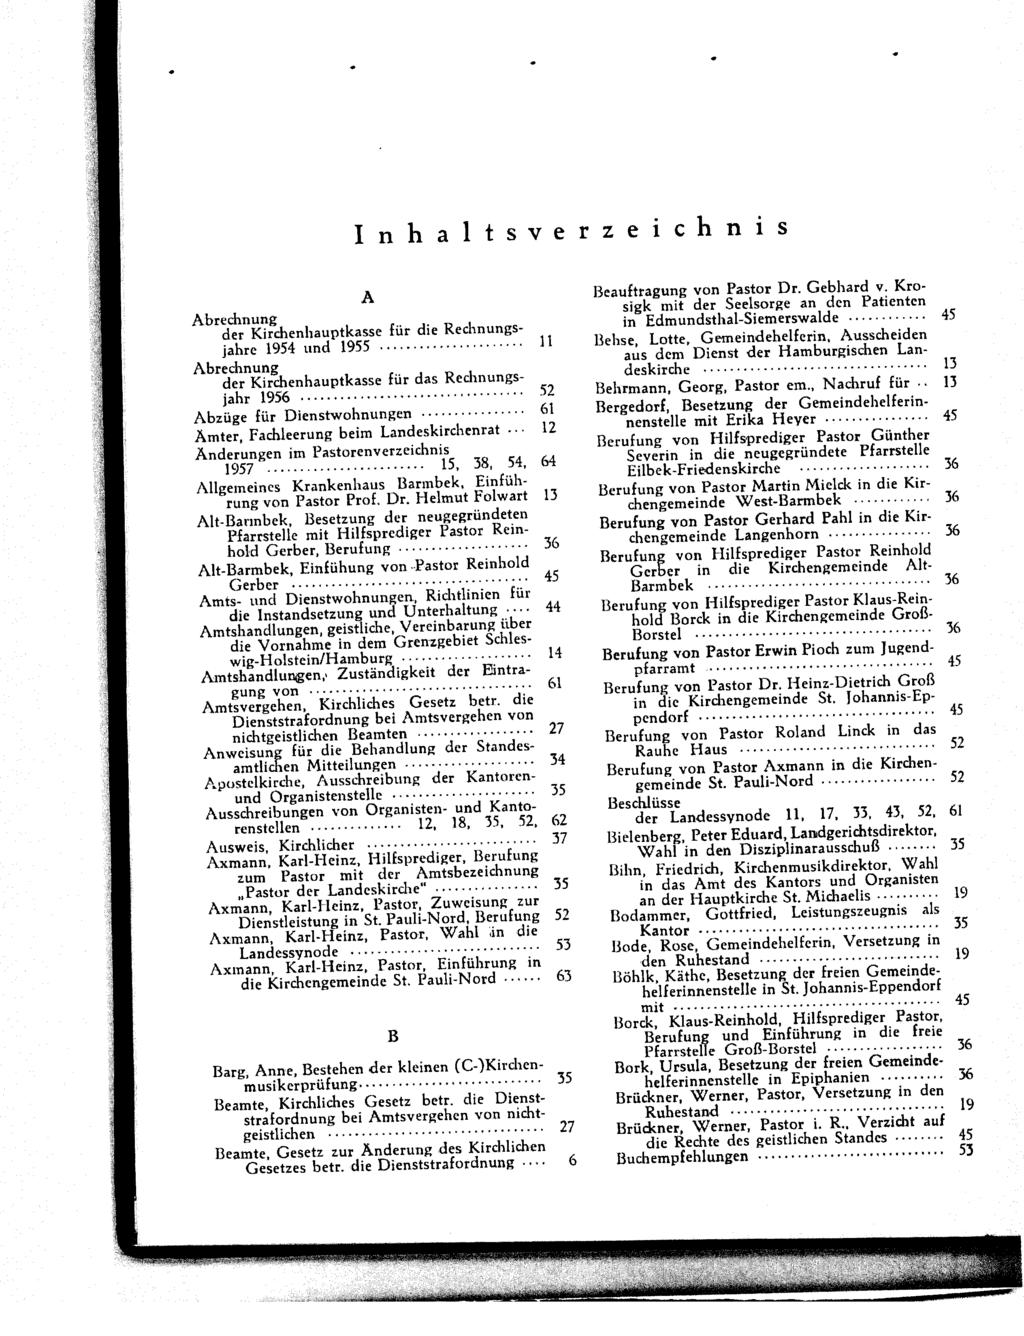 Inhaltsverzeichnis A Abrechnung der Kirchenhauptkasse für die Rechnungsjahre 1954 und 1955.......... 11 Abrechnung der Kirchenhauptkasse für das Rechnungsjahr 1956....... 52 Abzüge für Dienstwohnungen.